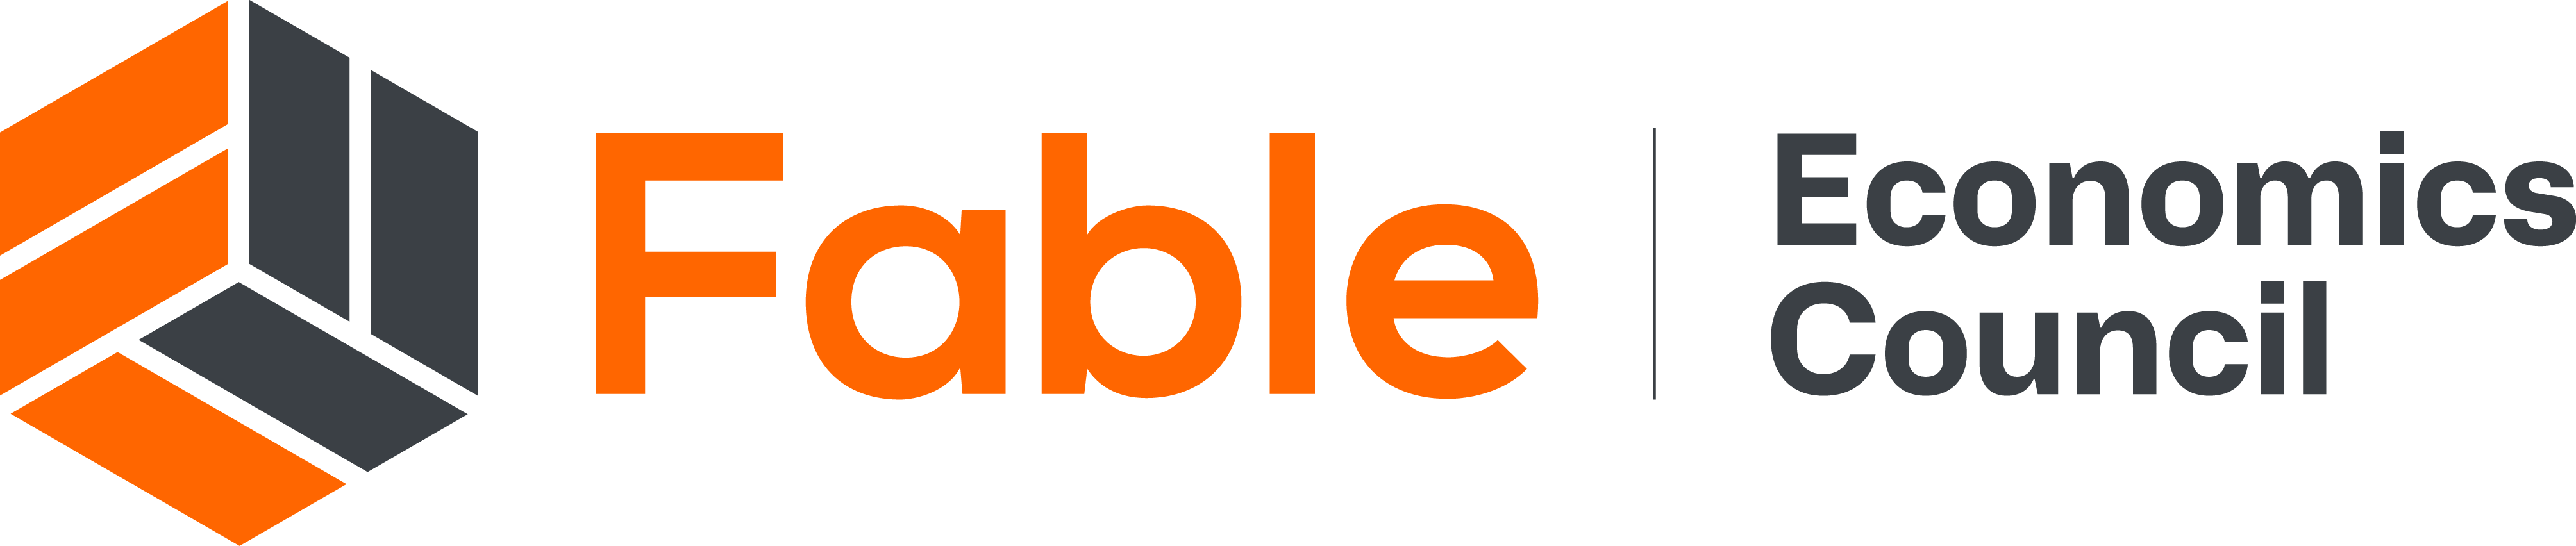 fable-economics-council-logo